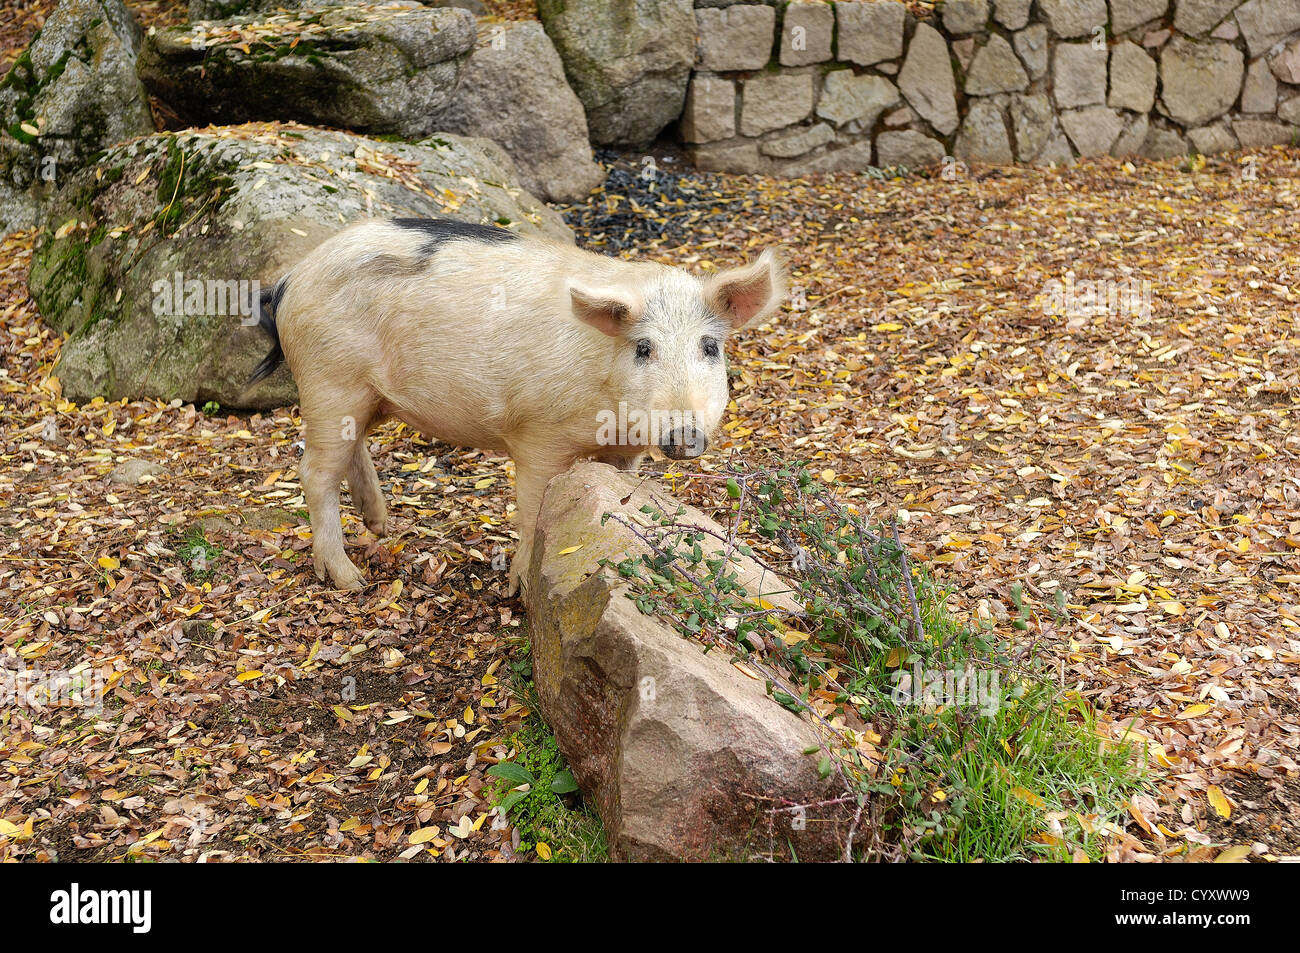 cochon sauvage corse, dans son milieux favoris, chataigneraie de Cristinacce  Corse du Sud Stock Photo